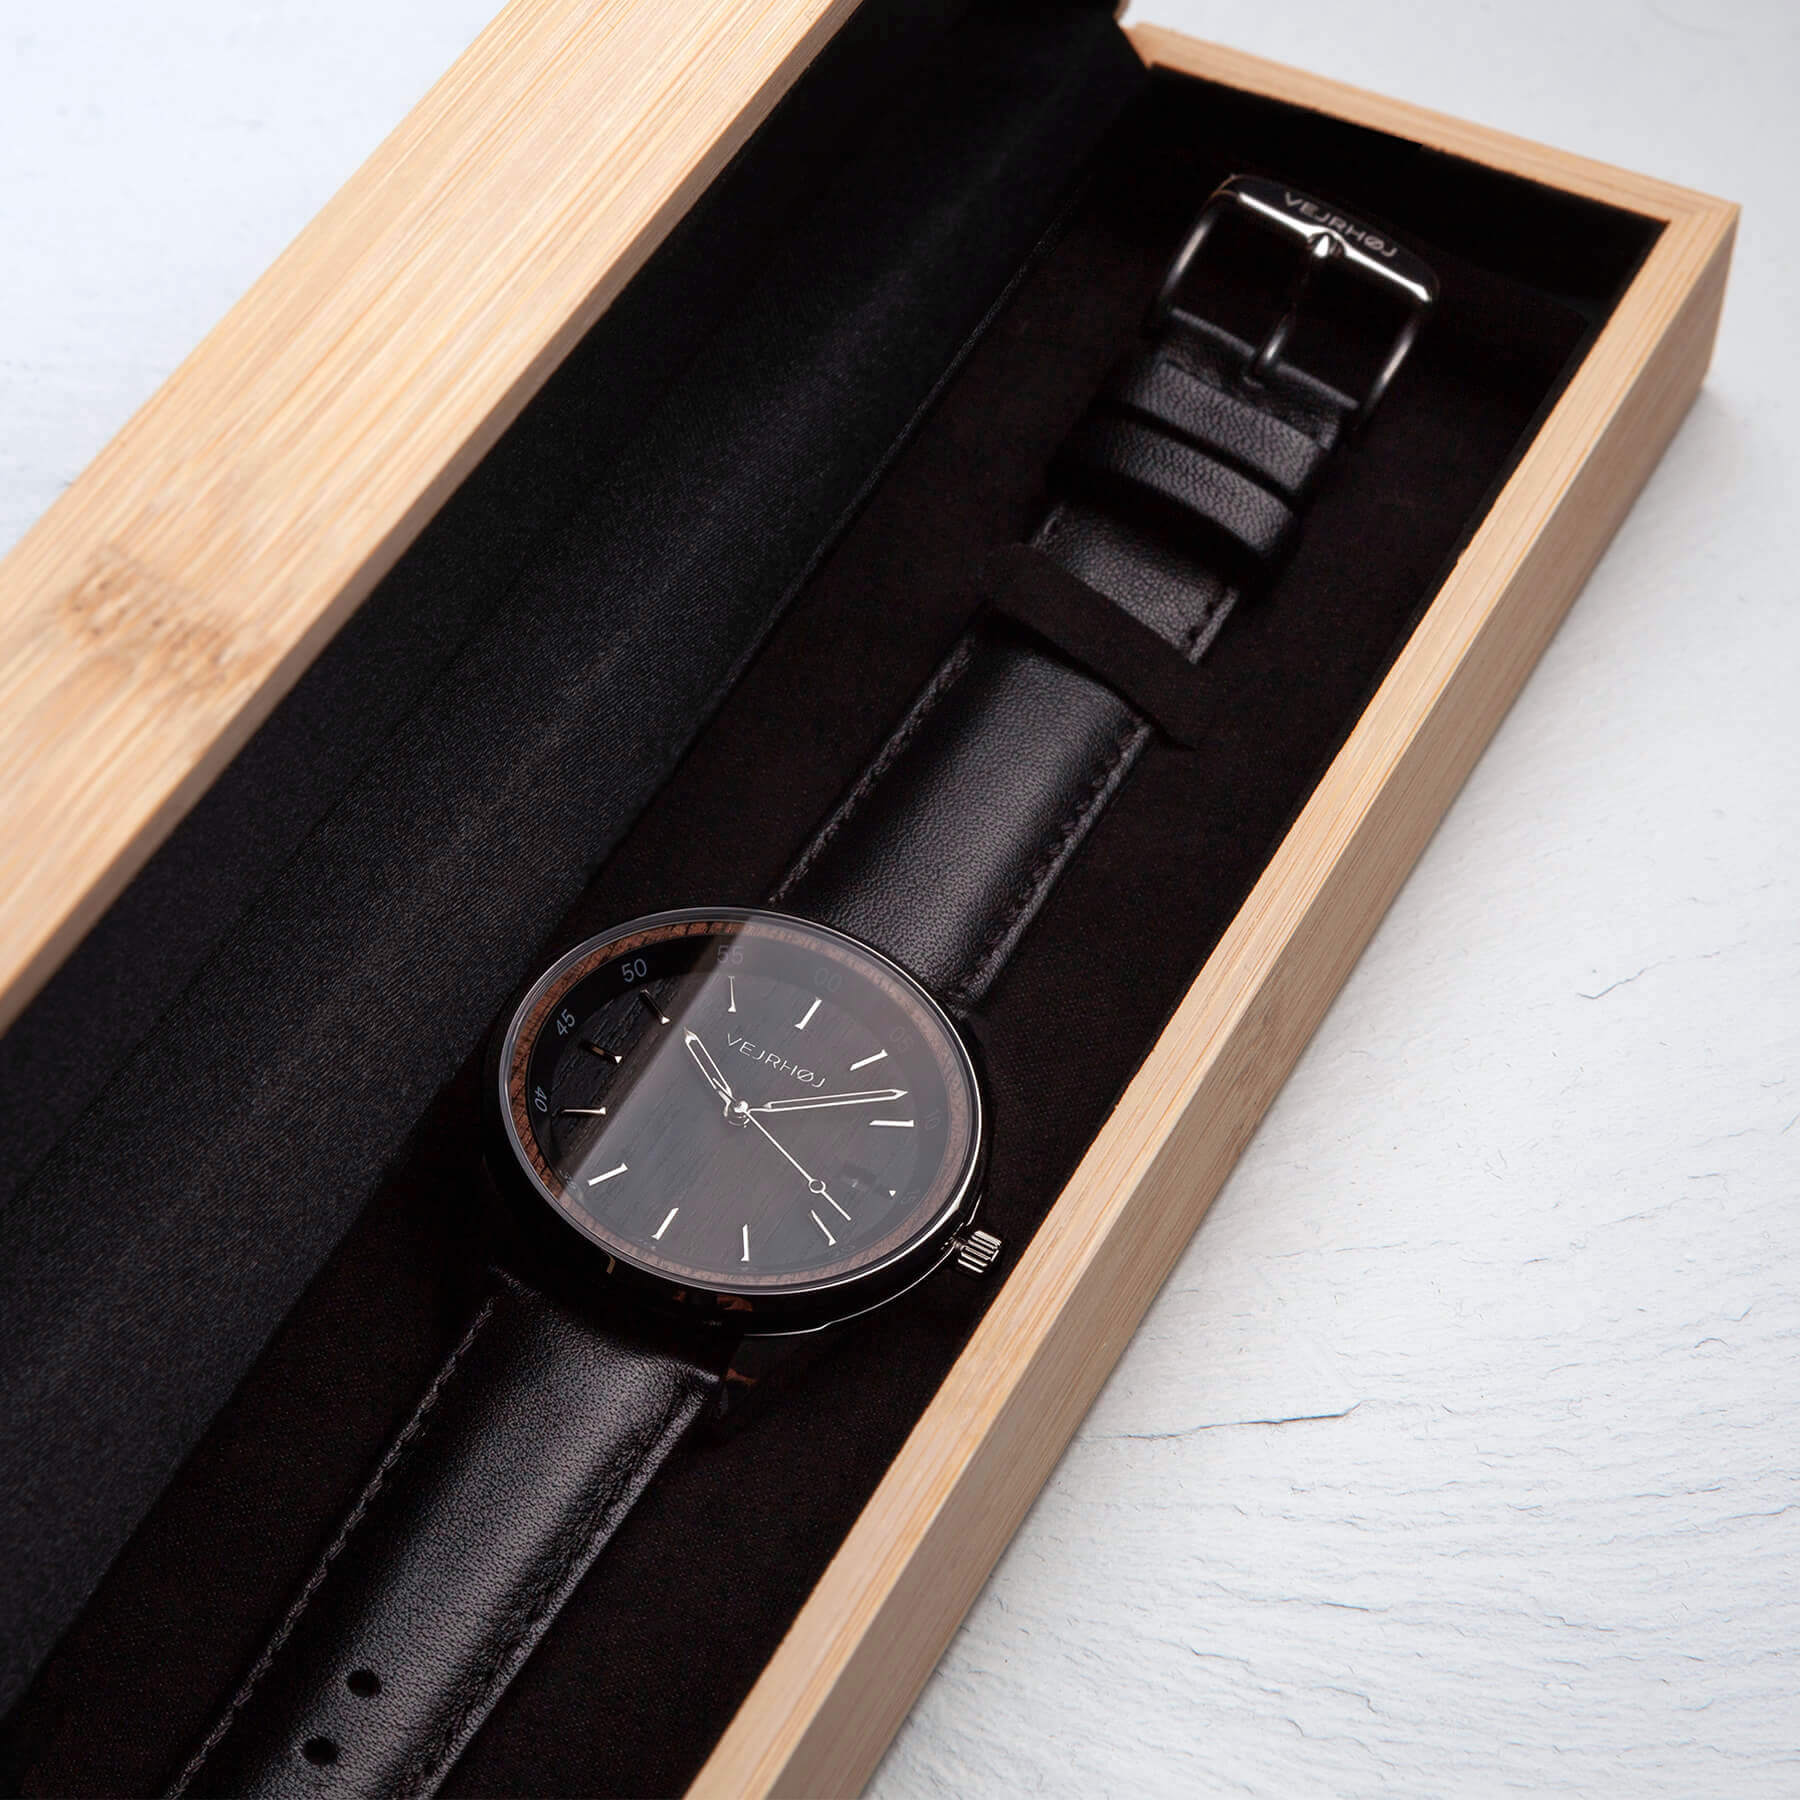 VEJRHØJ 黒とシルバーの天然木材を使った機械式腕時計